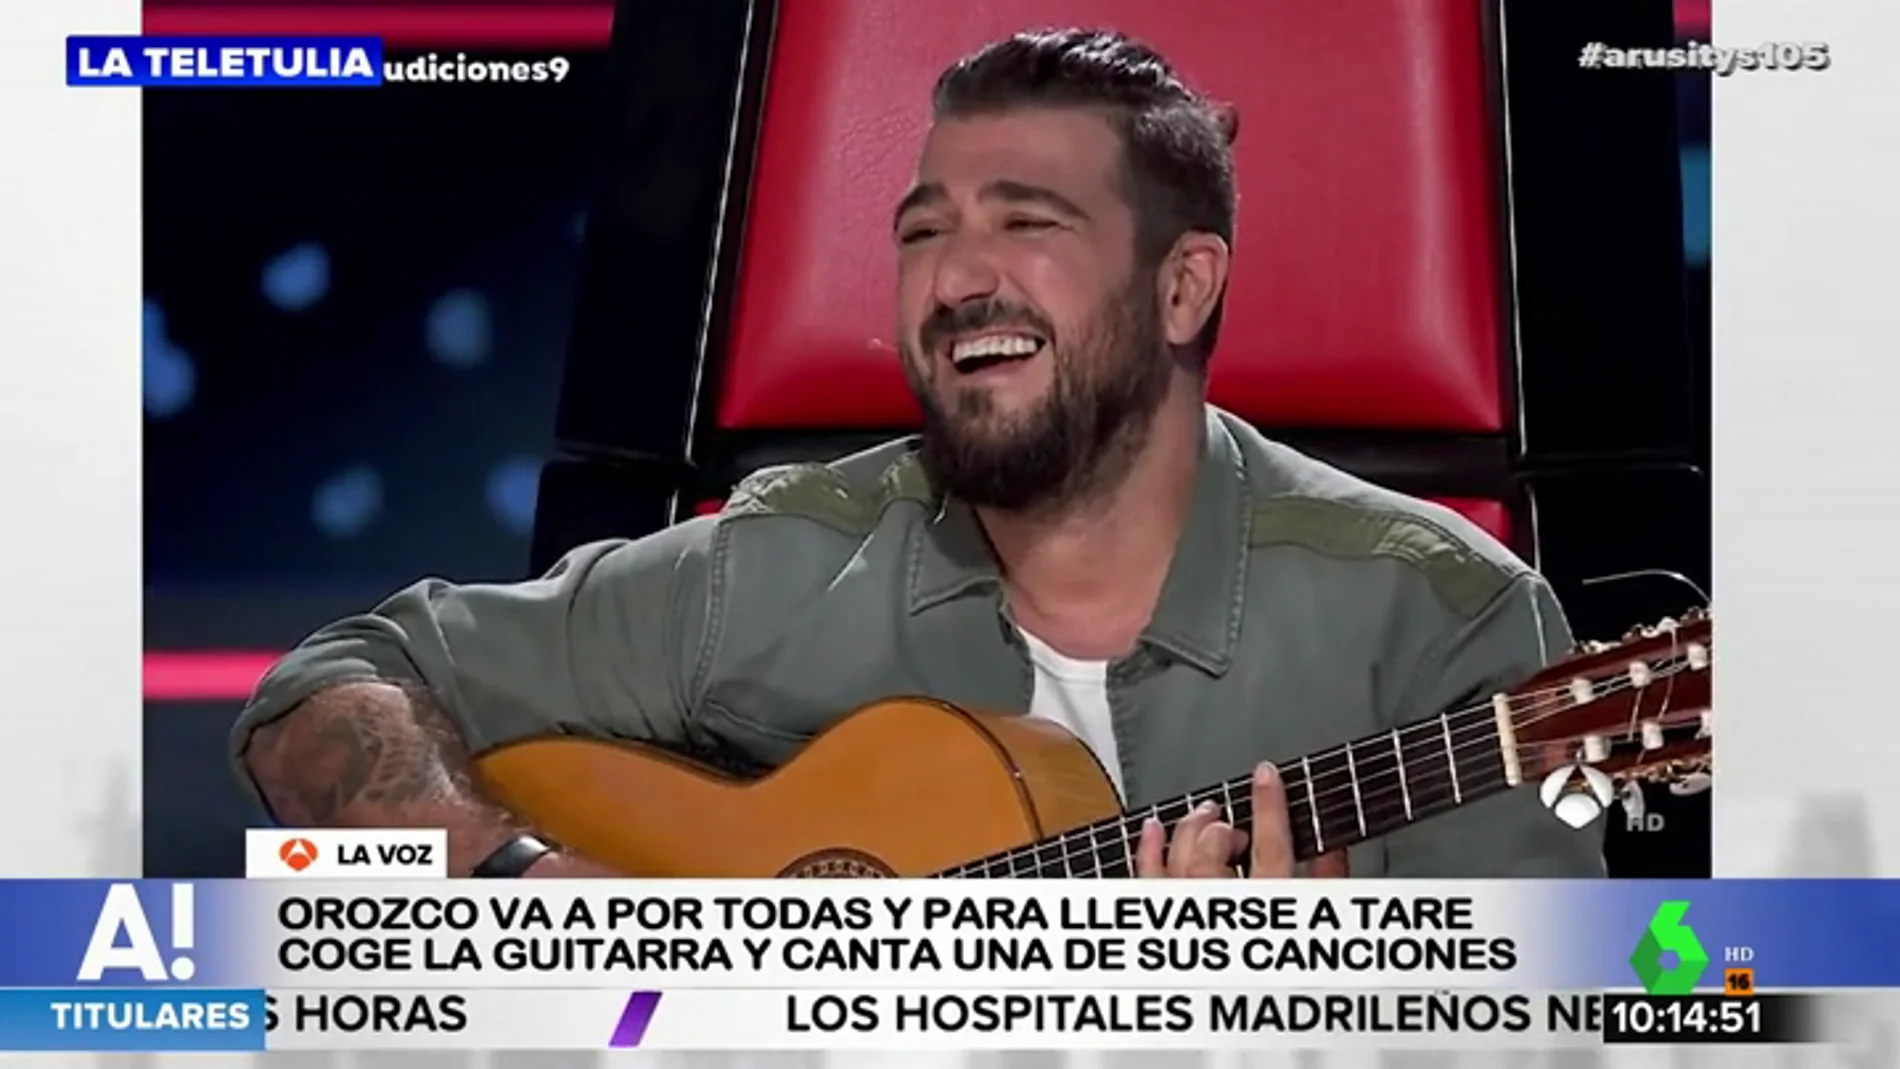 Antonio Orozco 'roba' la guitarra a un concursante de 'La Voz' para interpretar uno de sus temas